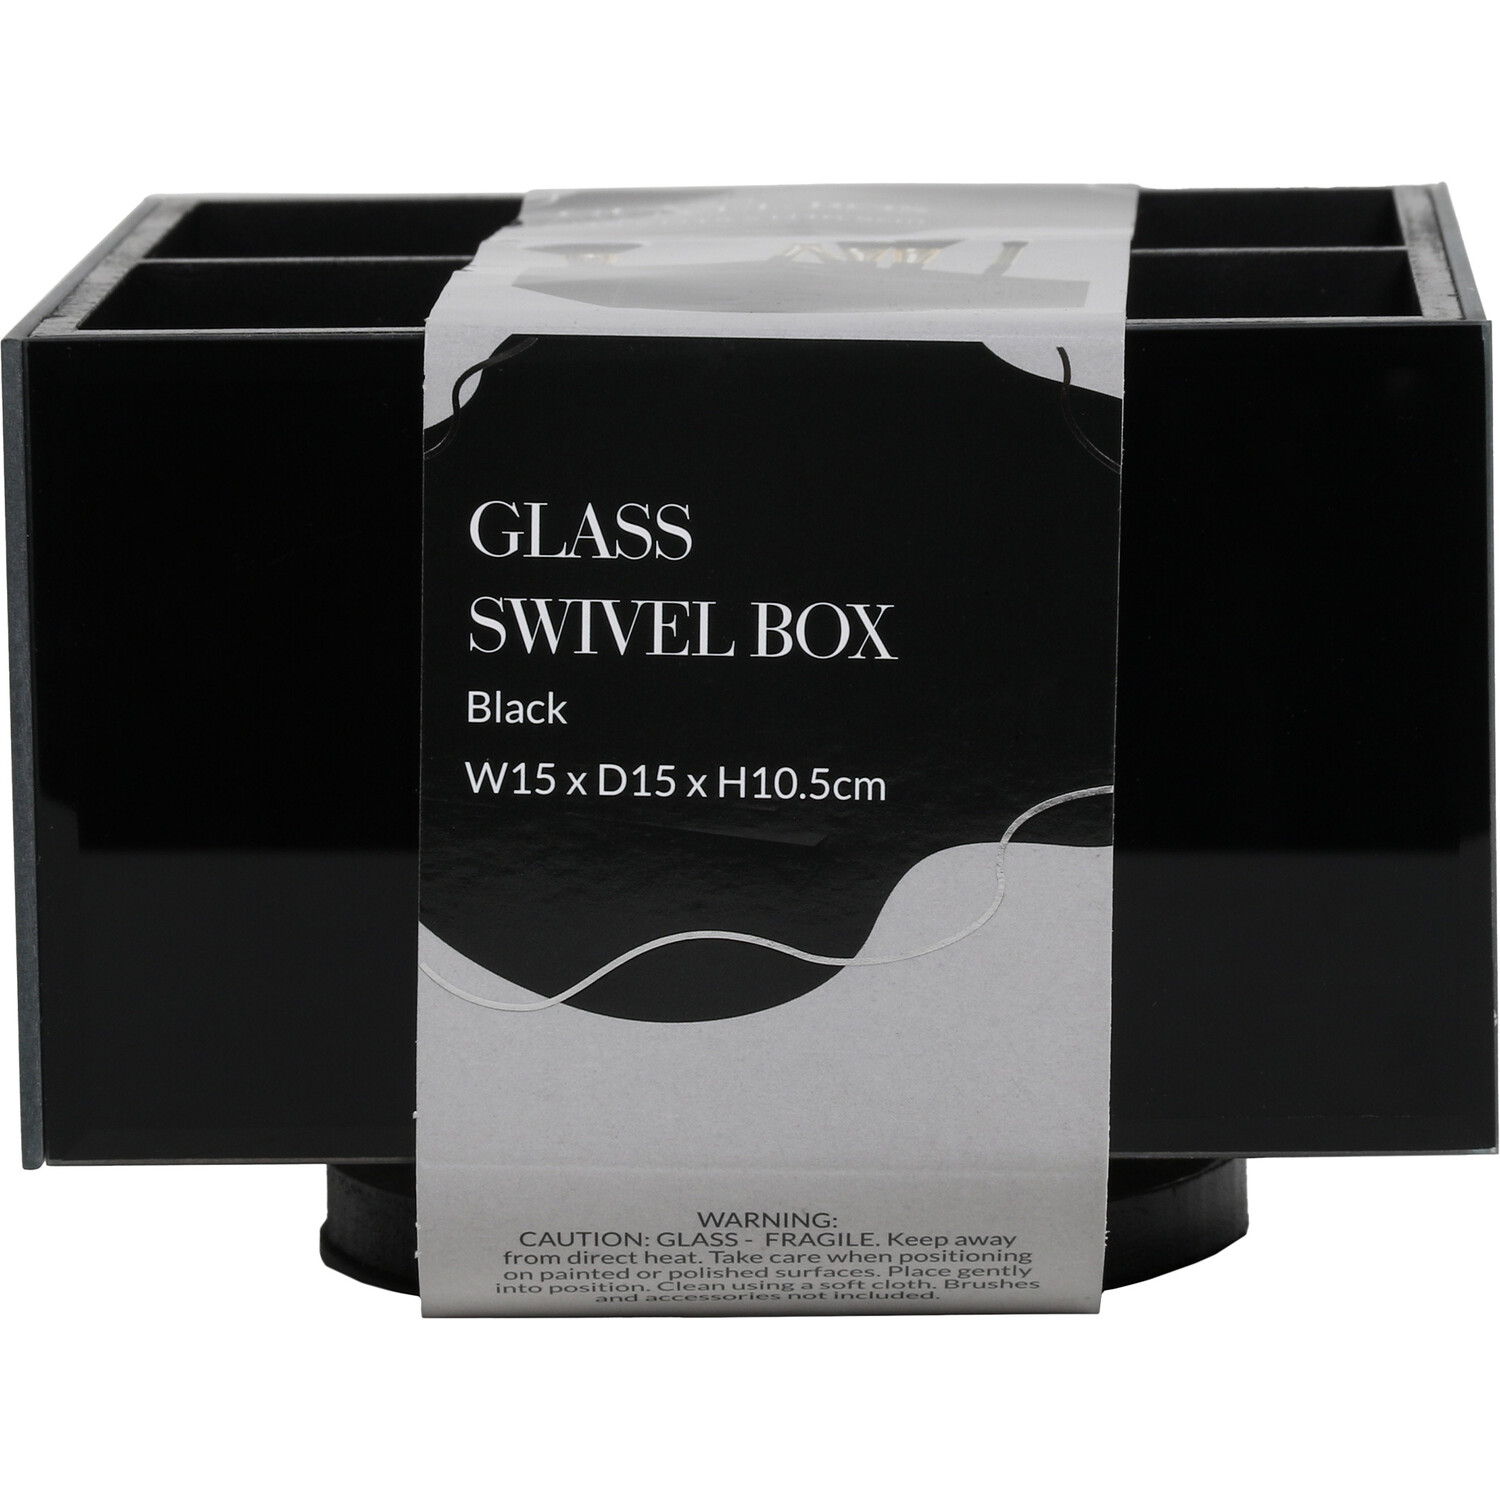 Glass Swivel Box Image 1